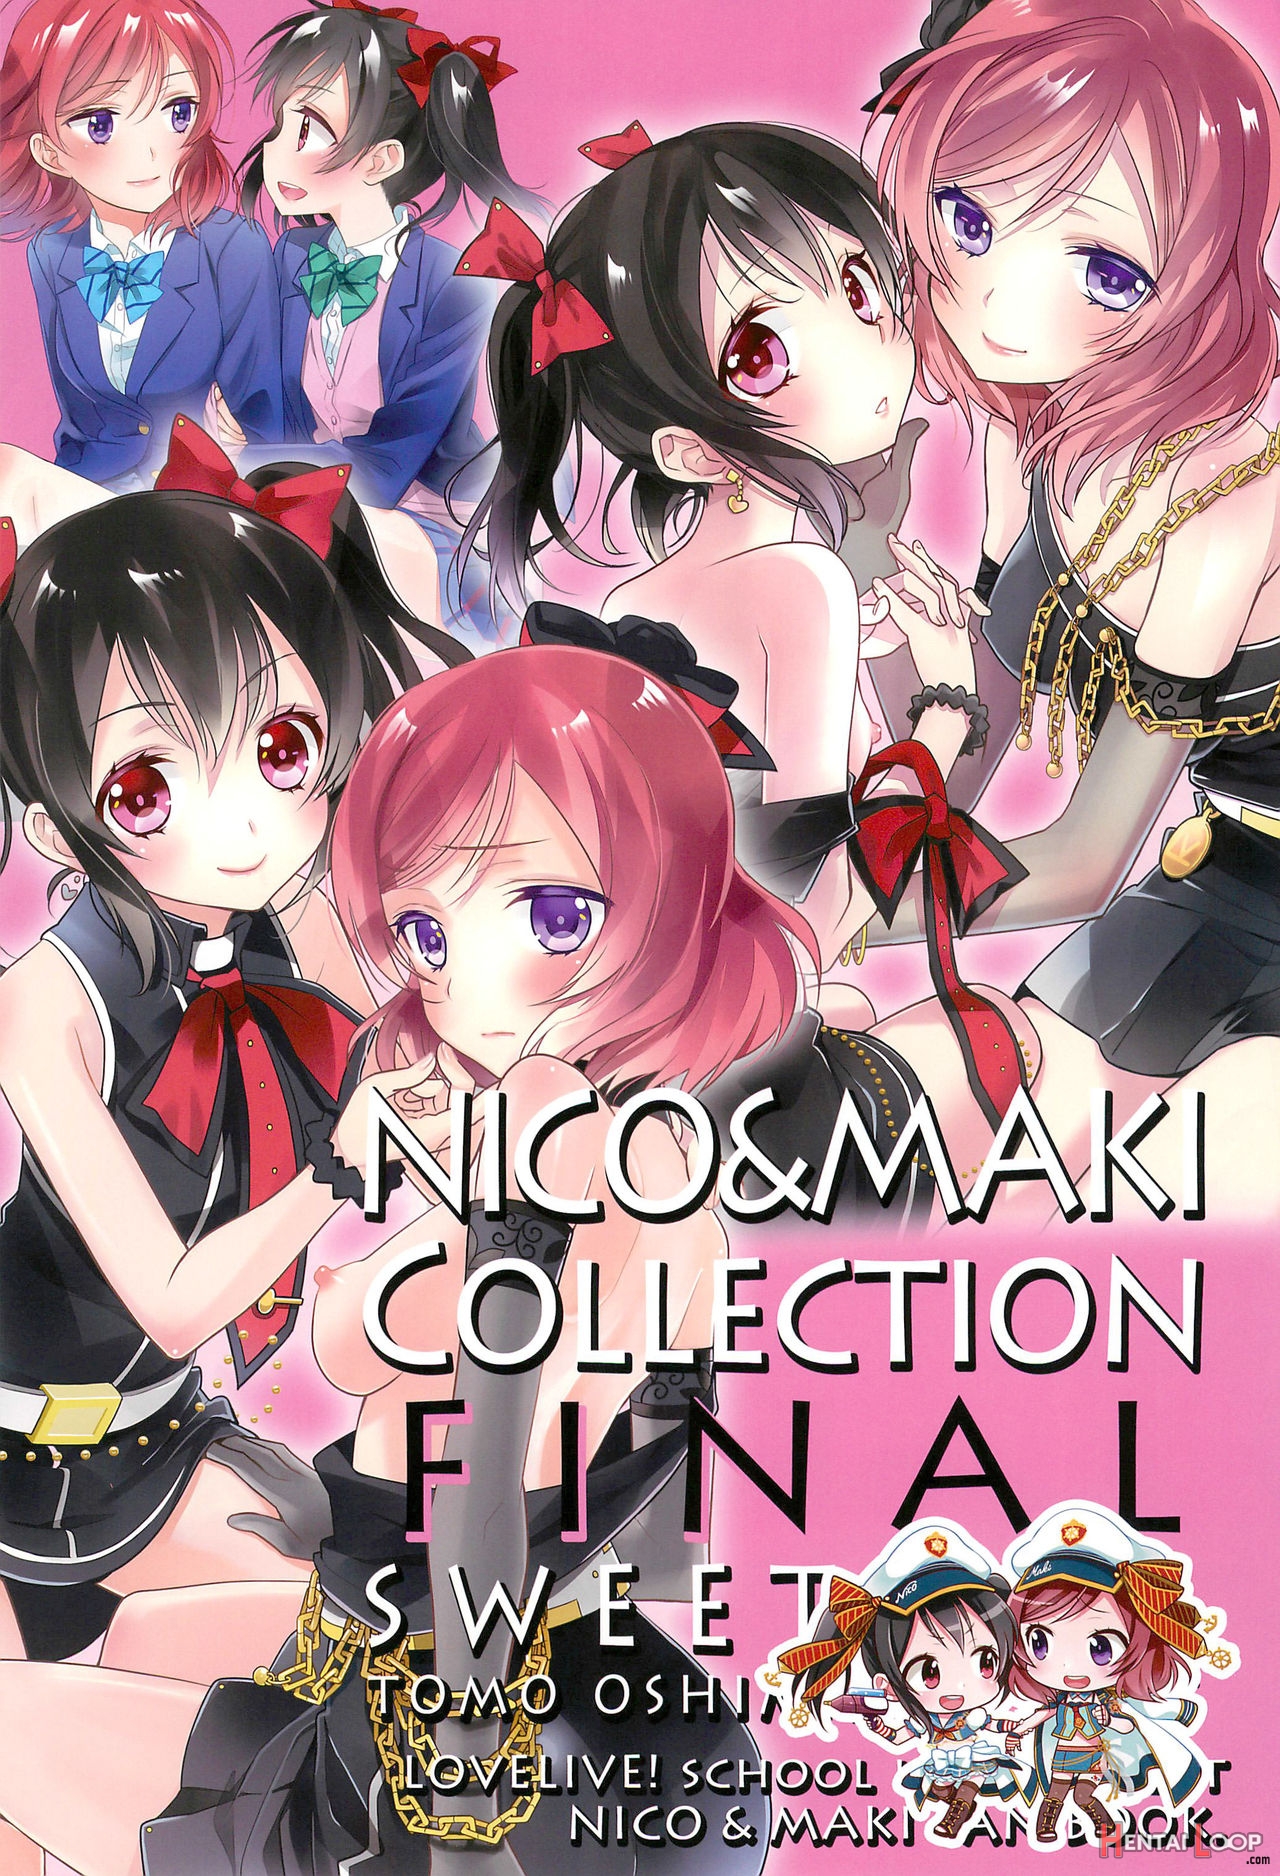 Nico & Maki Collection Final page 4